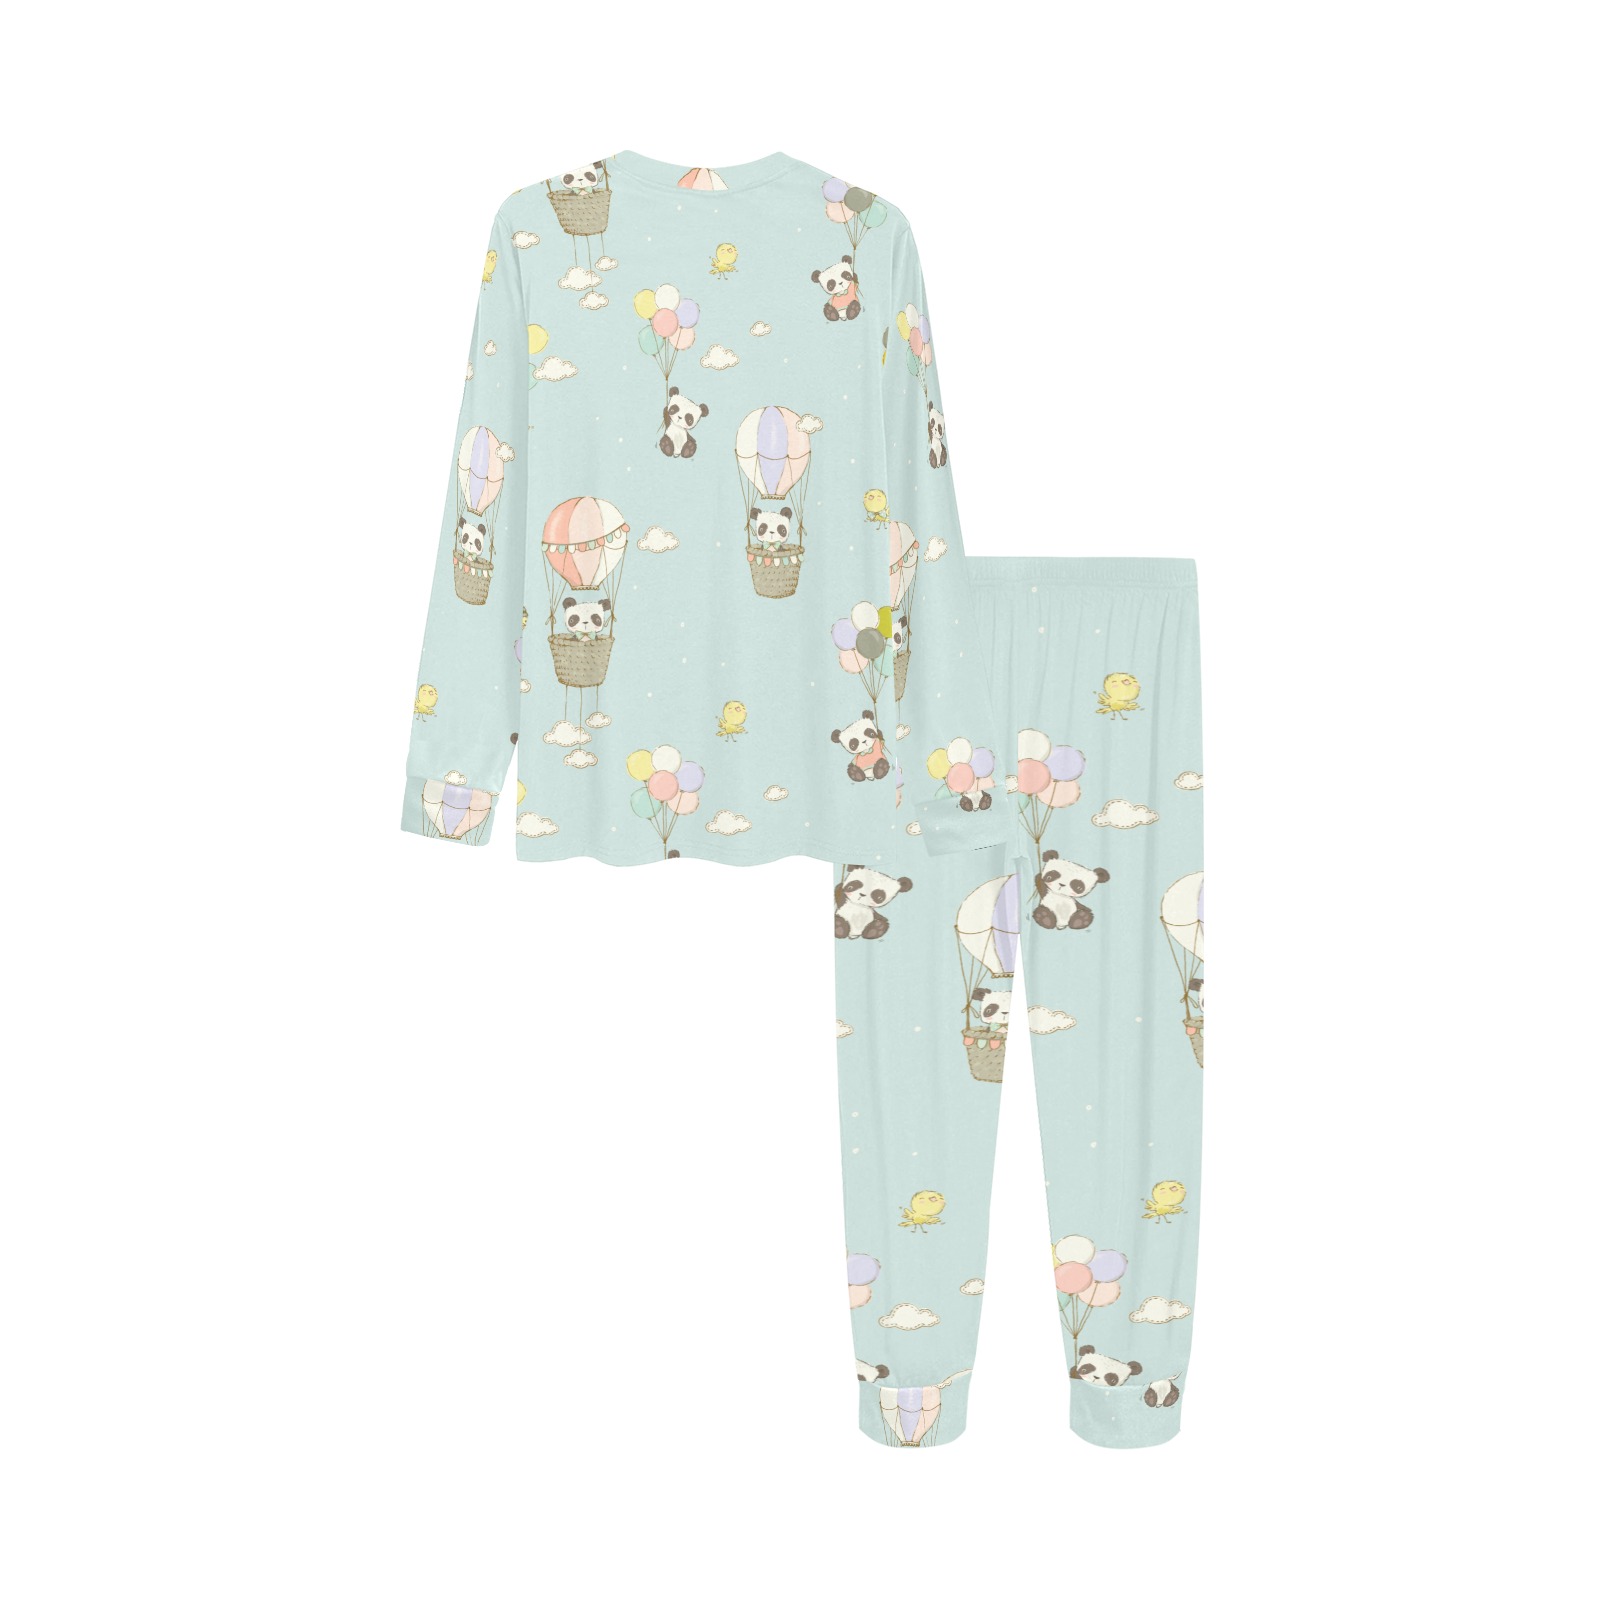 Flying Pandas Kids' All Over Print Pajama Set